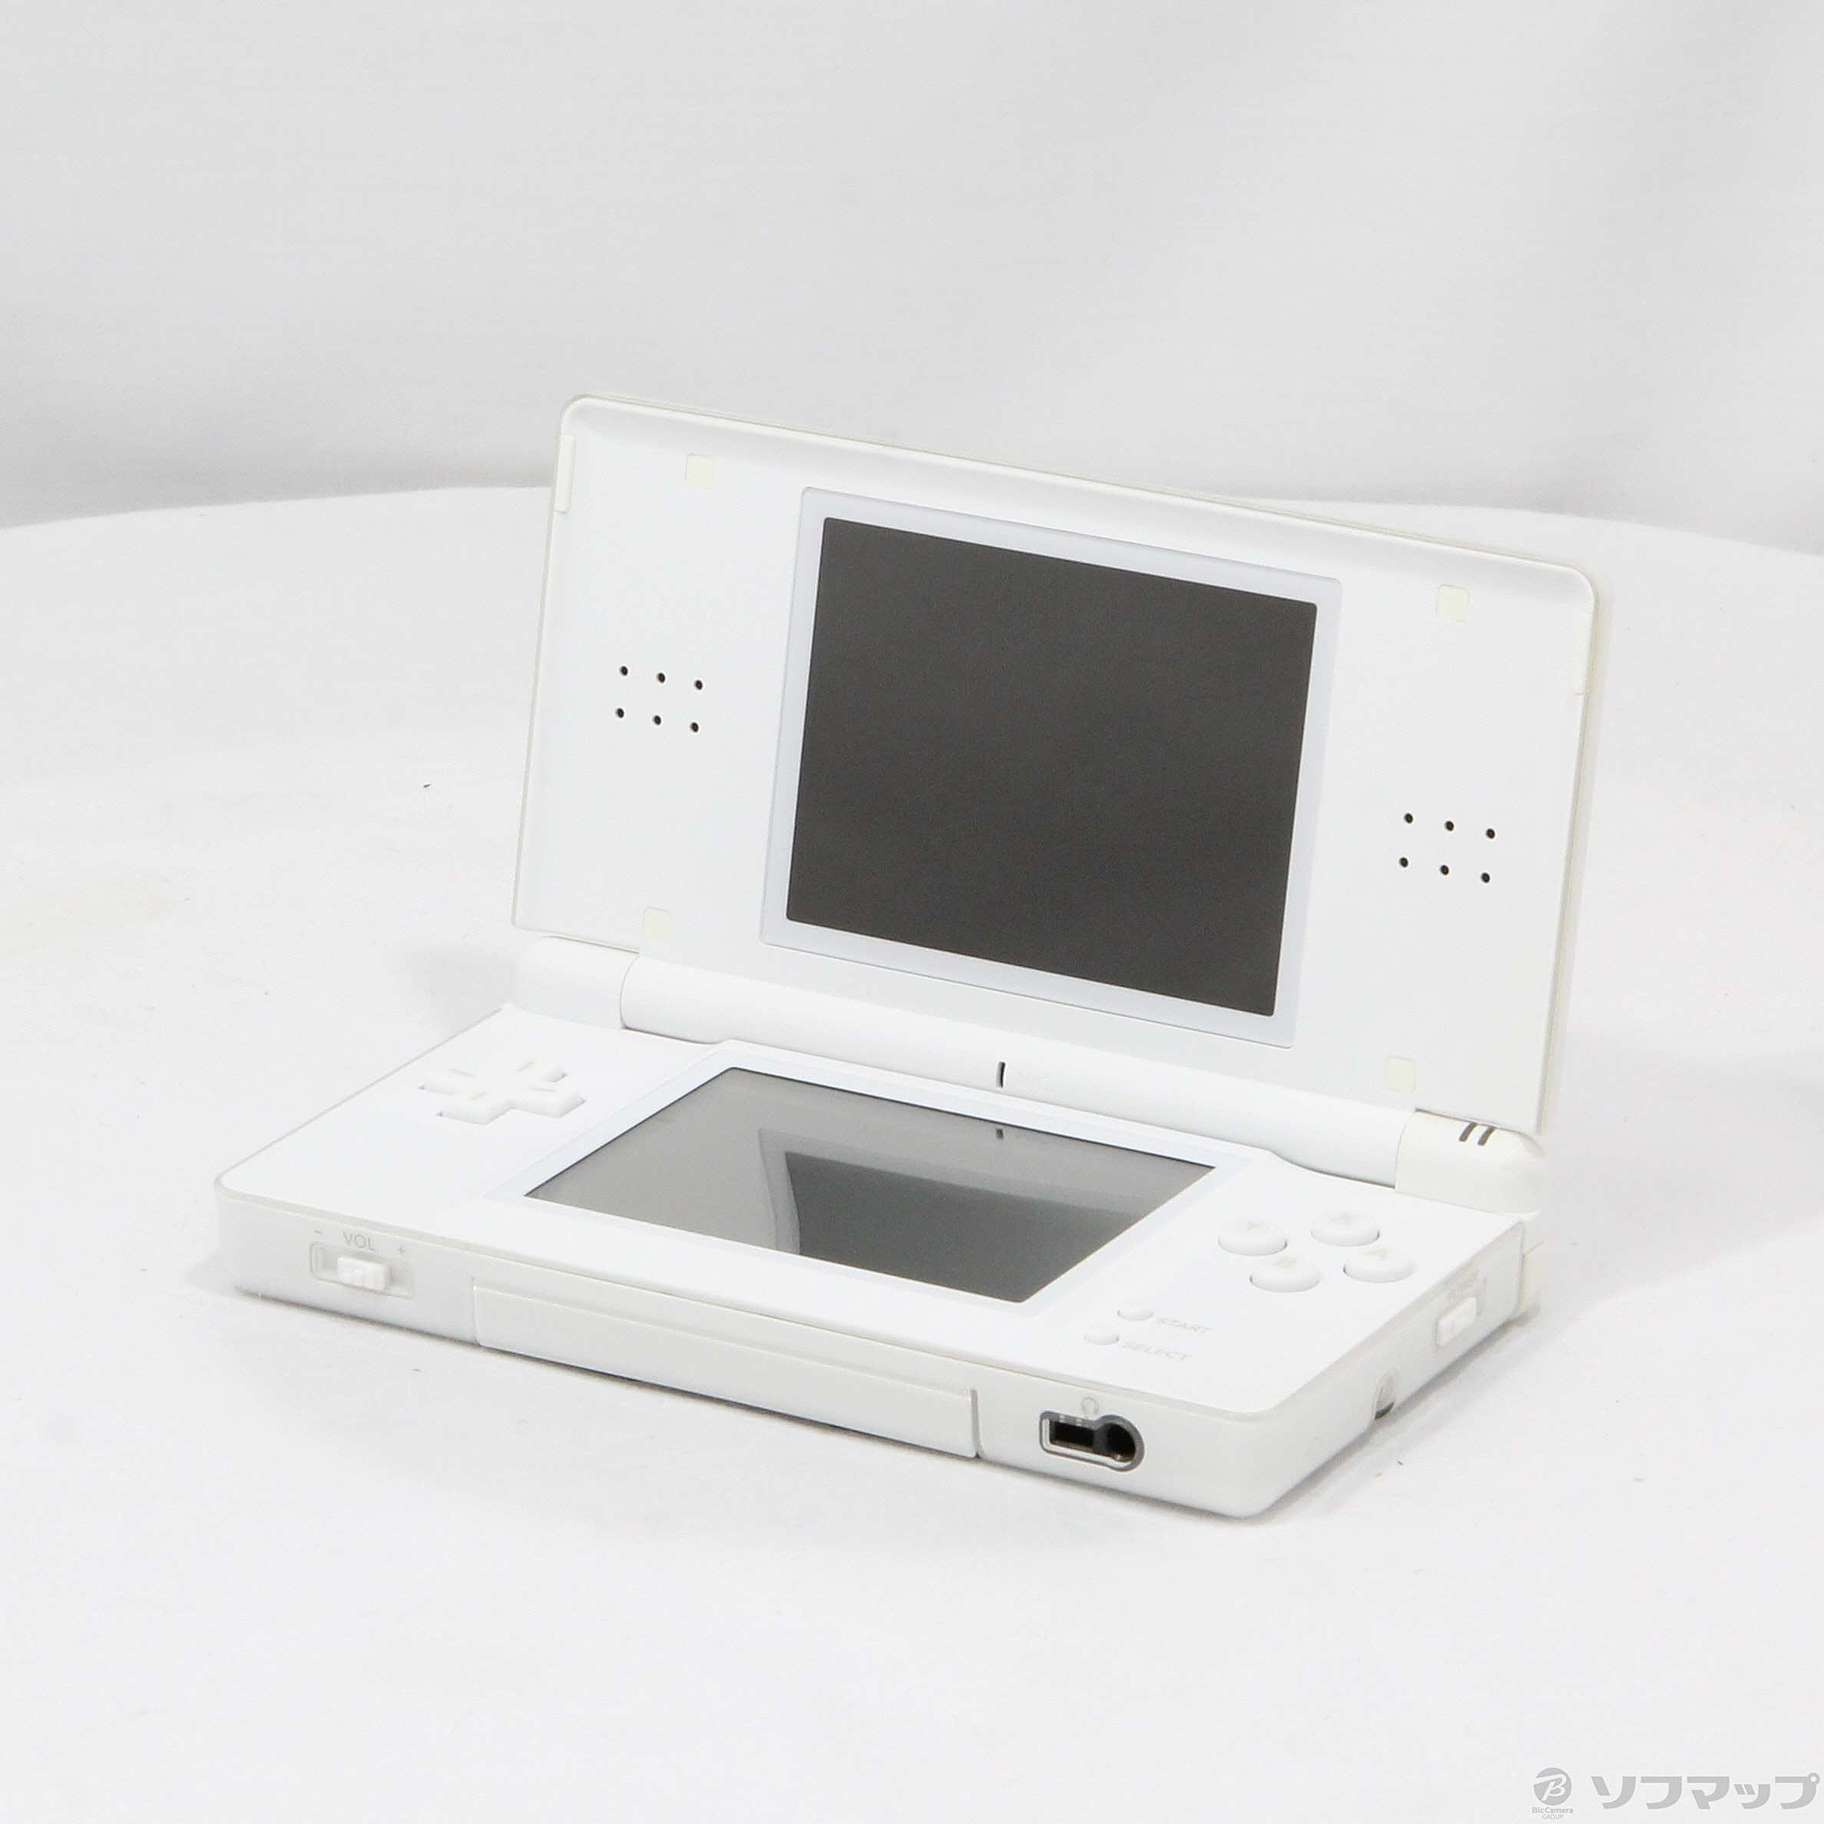 任天堂 Nintendo DS Lite クリスタルホワイト - 携帯用ゲーム本体